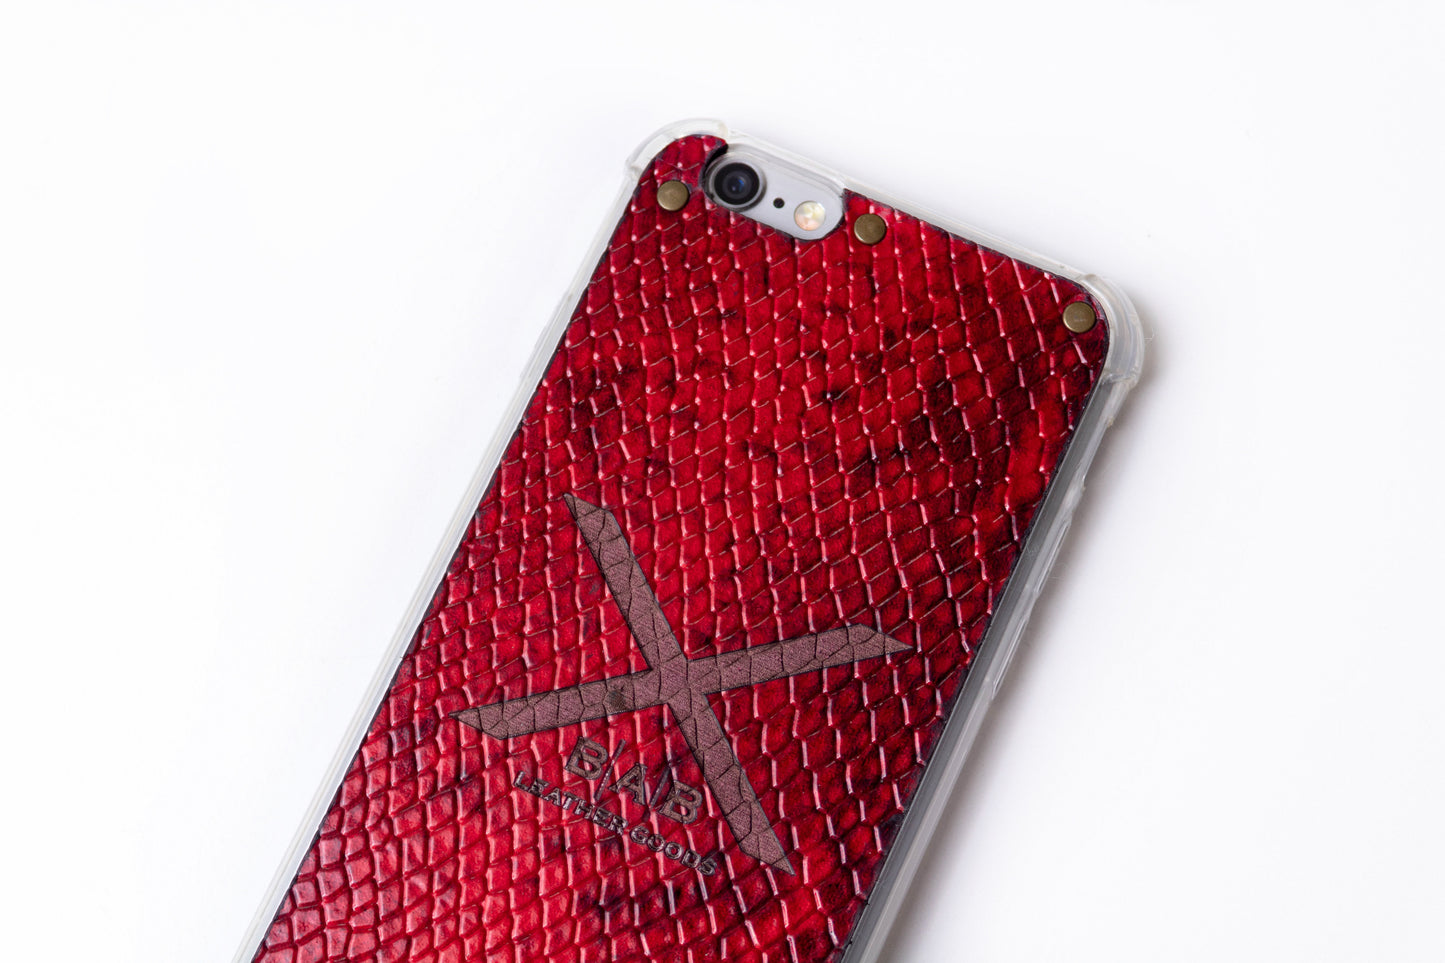 Coque pour iPhone en Cuir Véritable Verni Python Rouge Texturé, découpée et gravée au laser, 5 Rivets en Bronze.- F36